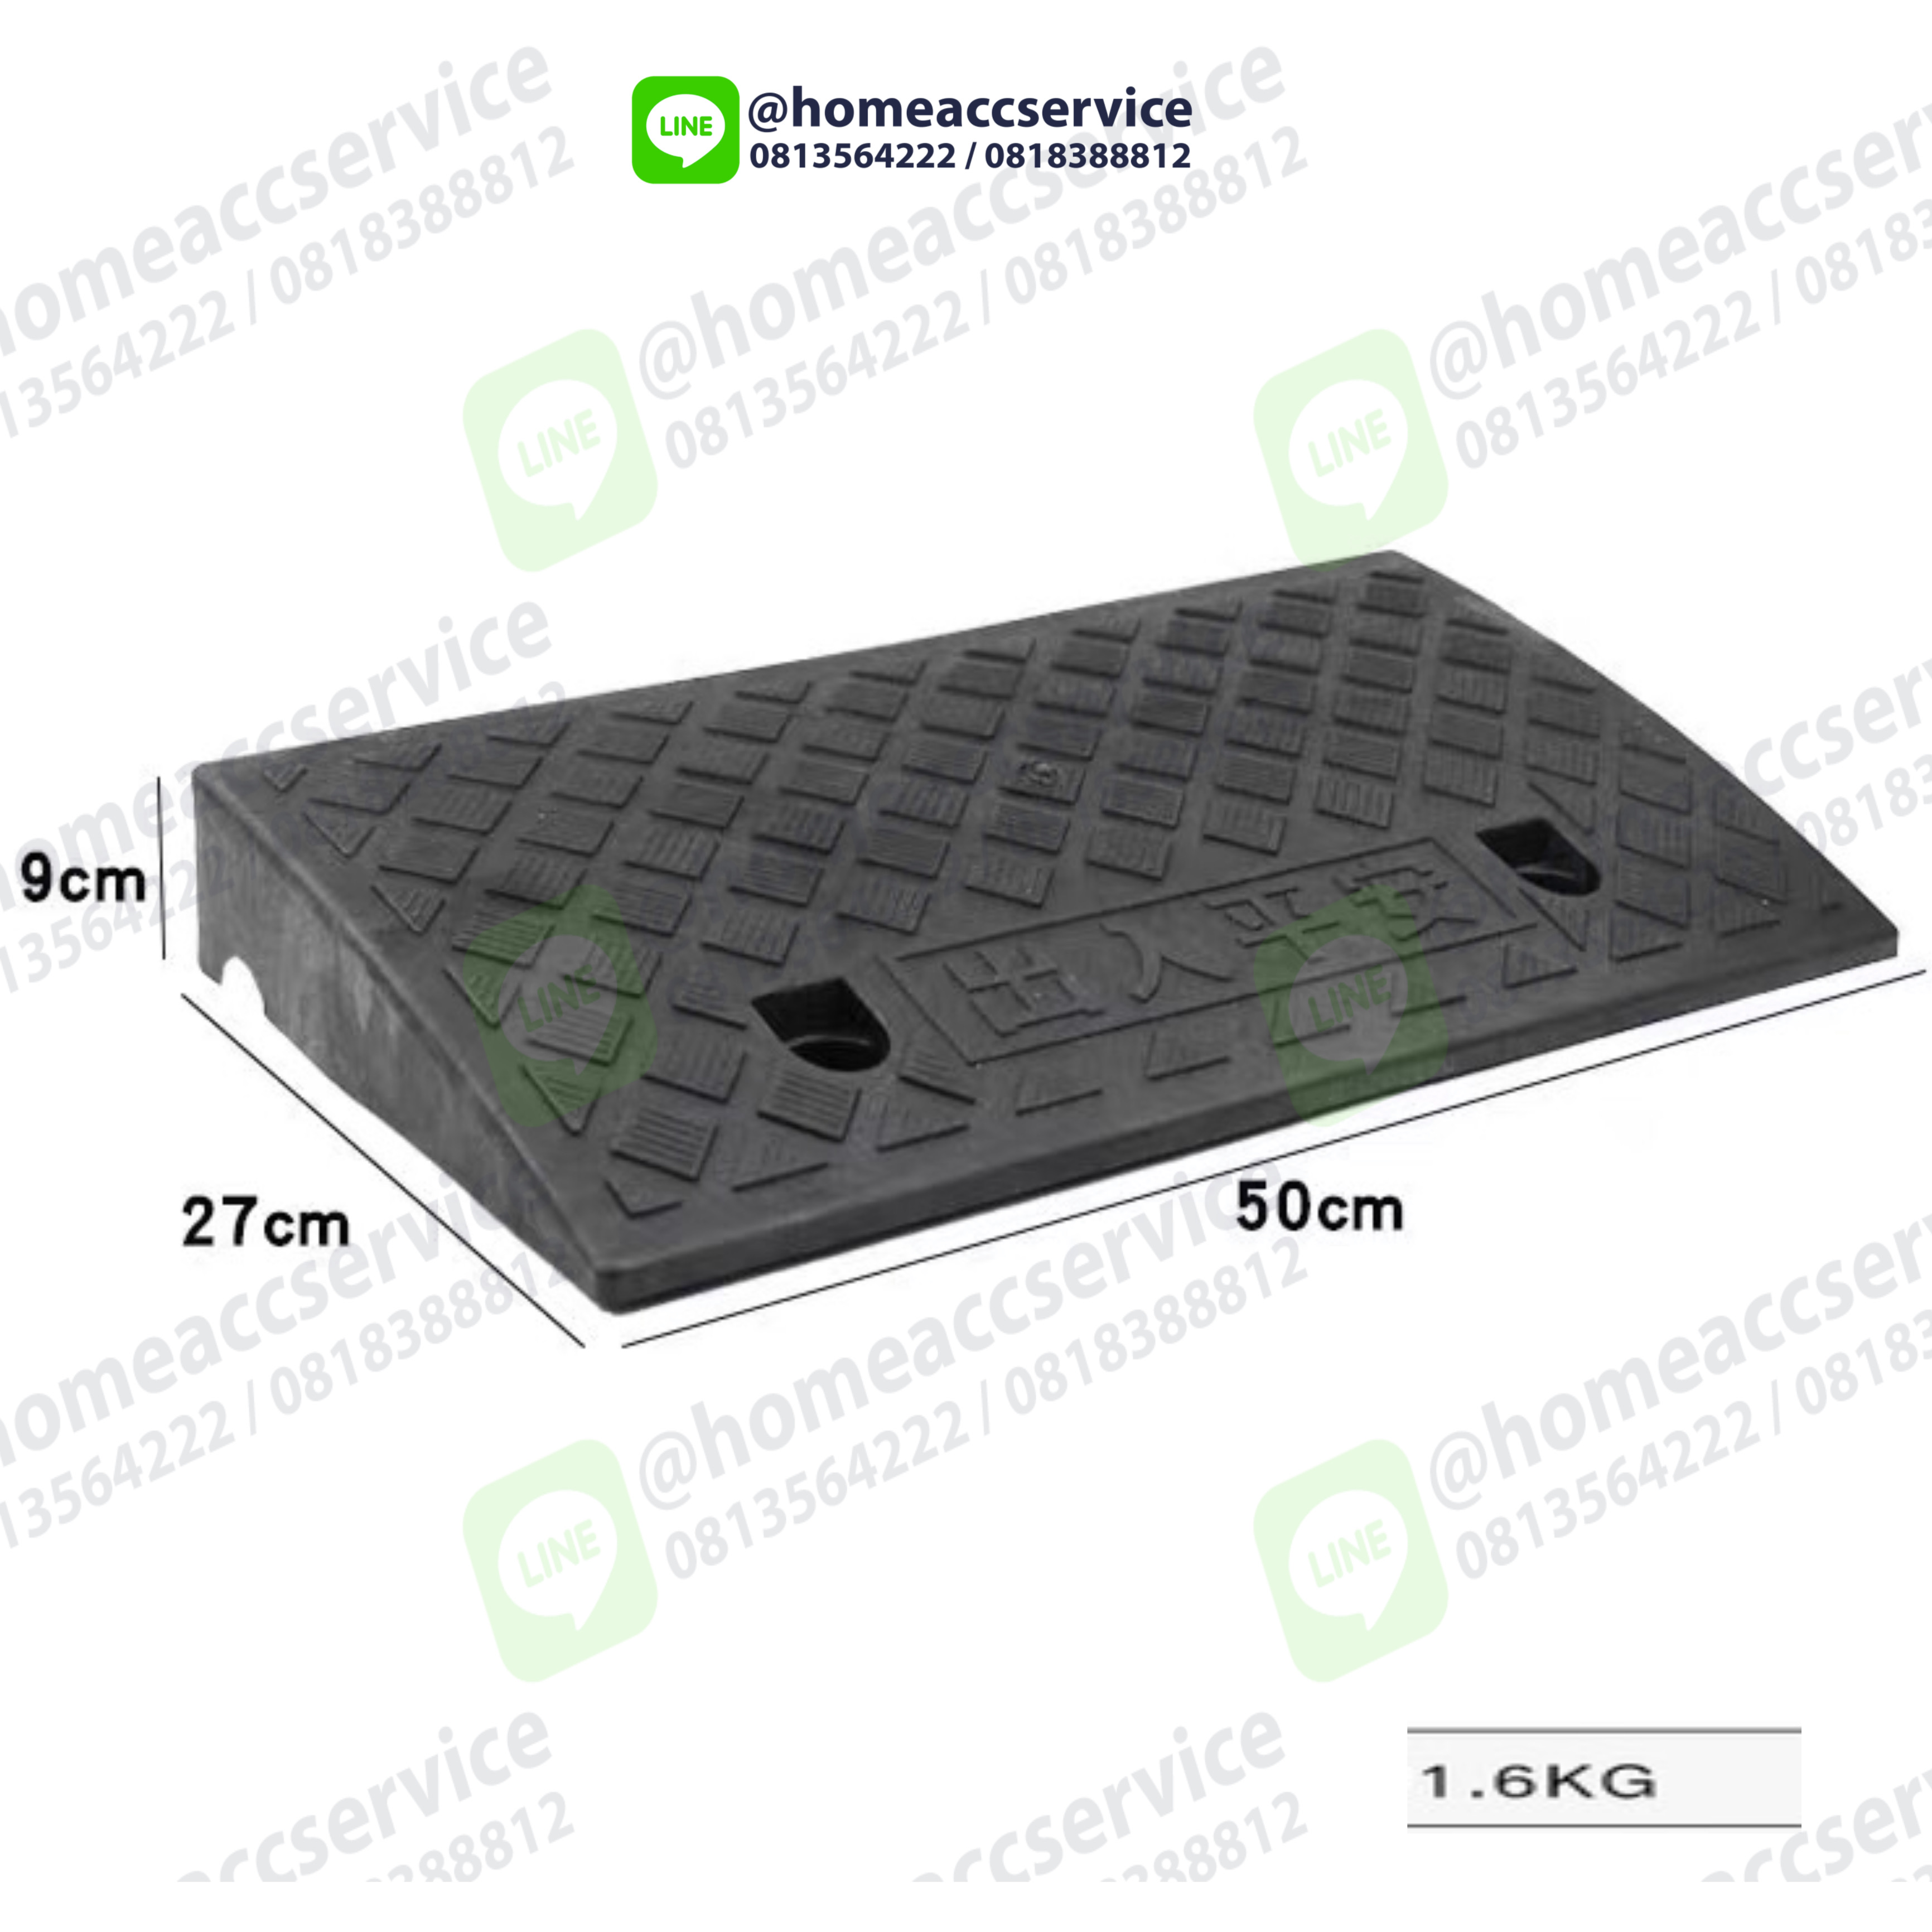 ทางลาดพลาสติกสีดำ สำเร็จรูป สูง 9 cm กว้าง 27 cm / ยาว 50cm หนัก 1.65 kg รับน้ำหนักรถยนต์ได้ 2 ตัน - Plastic Ramp 9x27x50cm 1.65 kg